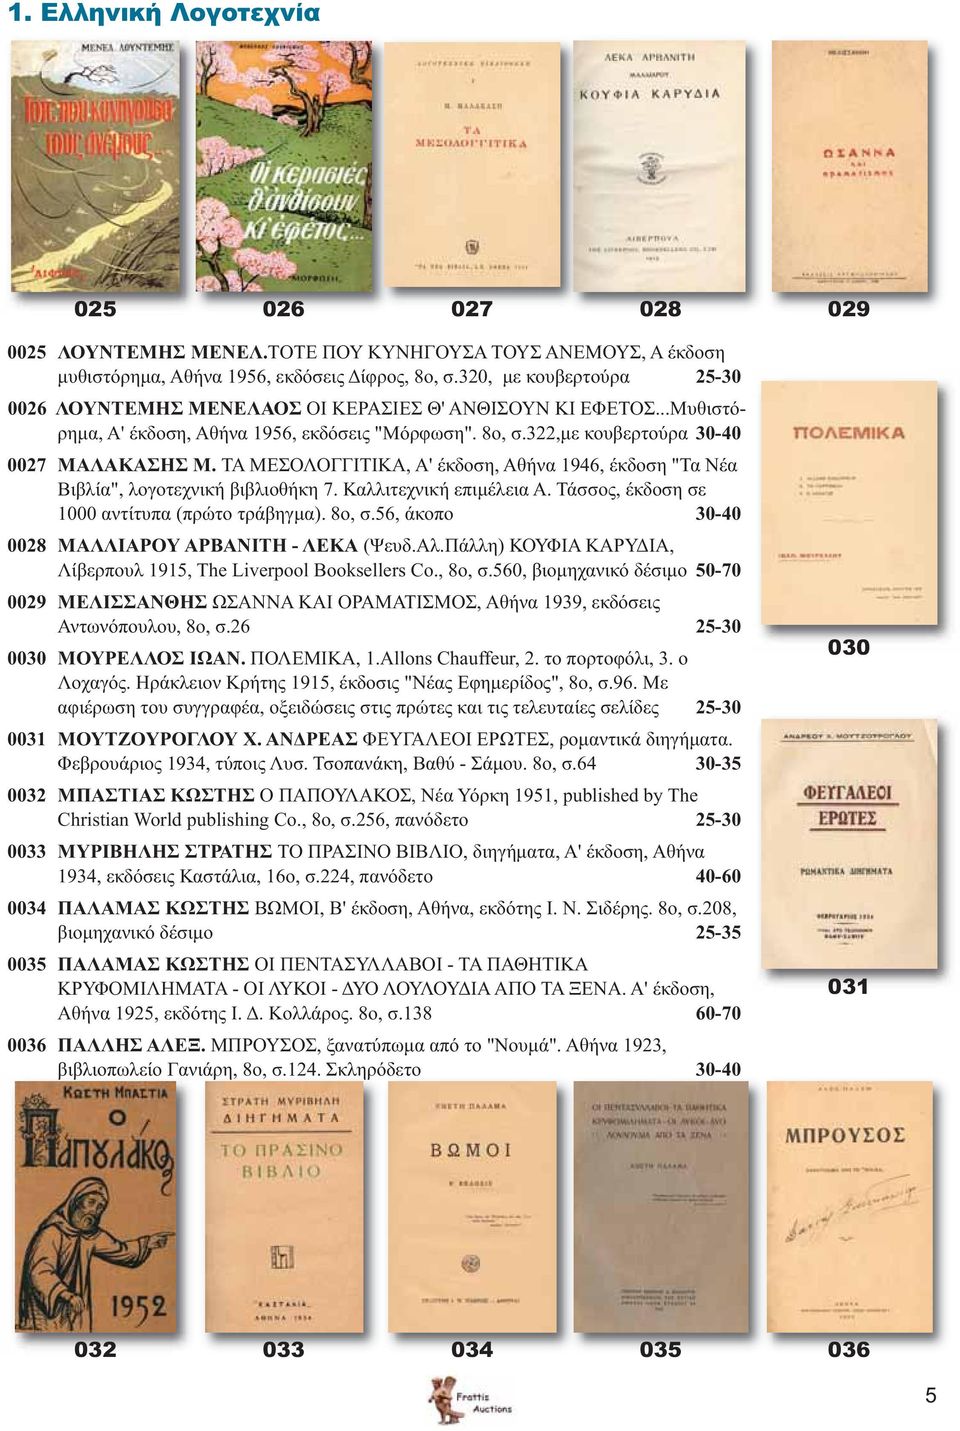 ΤΑ ΜΕΣΟΛΟΓΓΙΤΙΚΑ, Α' έκδοση, Αθήνα 1946, έκδοση "Τα Νέα Βιβλία", λογοτεχνική βιβλιοθήκη 7. Καλλιτεχνική επιμέλεια Α. Τάσσος, έκδοση σε 1000 αντίτυπα (πρώτο τράβηγμα). 8ο, σ.